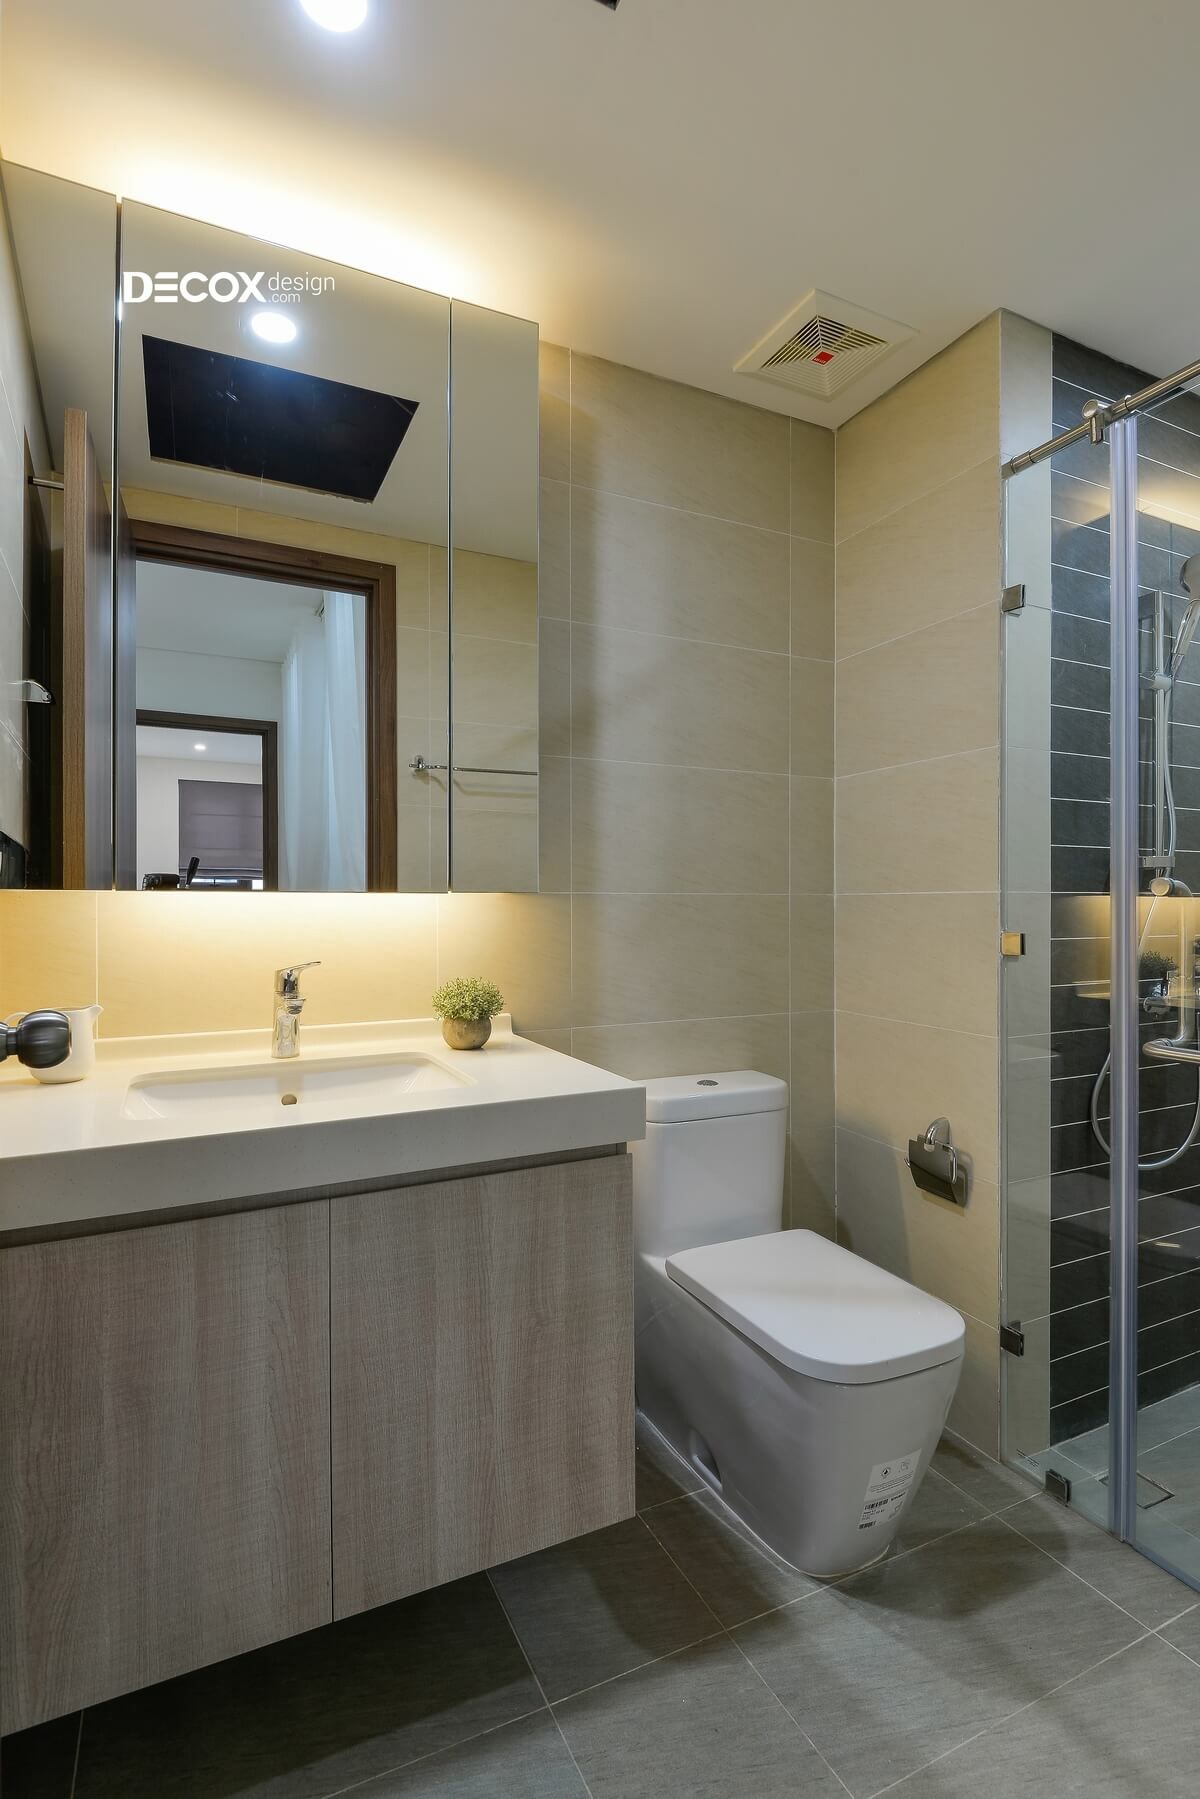 Nếu bạn yêu thích sự hiện đại và sang trọng, hãy bổ sung một chiếc đèn gương phòng tắm hiện đại vào phòng tắm của mình. Đèn gương không chỉ giúp cho bạn có thêm ánh sáng khi trang điểm hay làm đẹp mà còn là một sản phẩm nội thất vô cùng thời thượng.